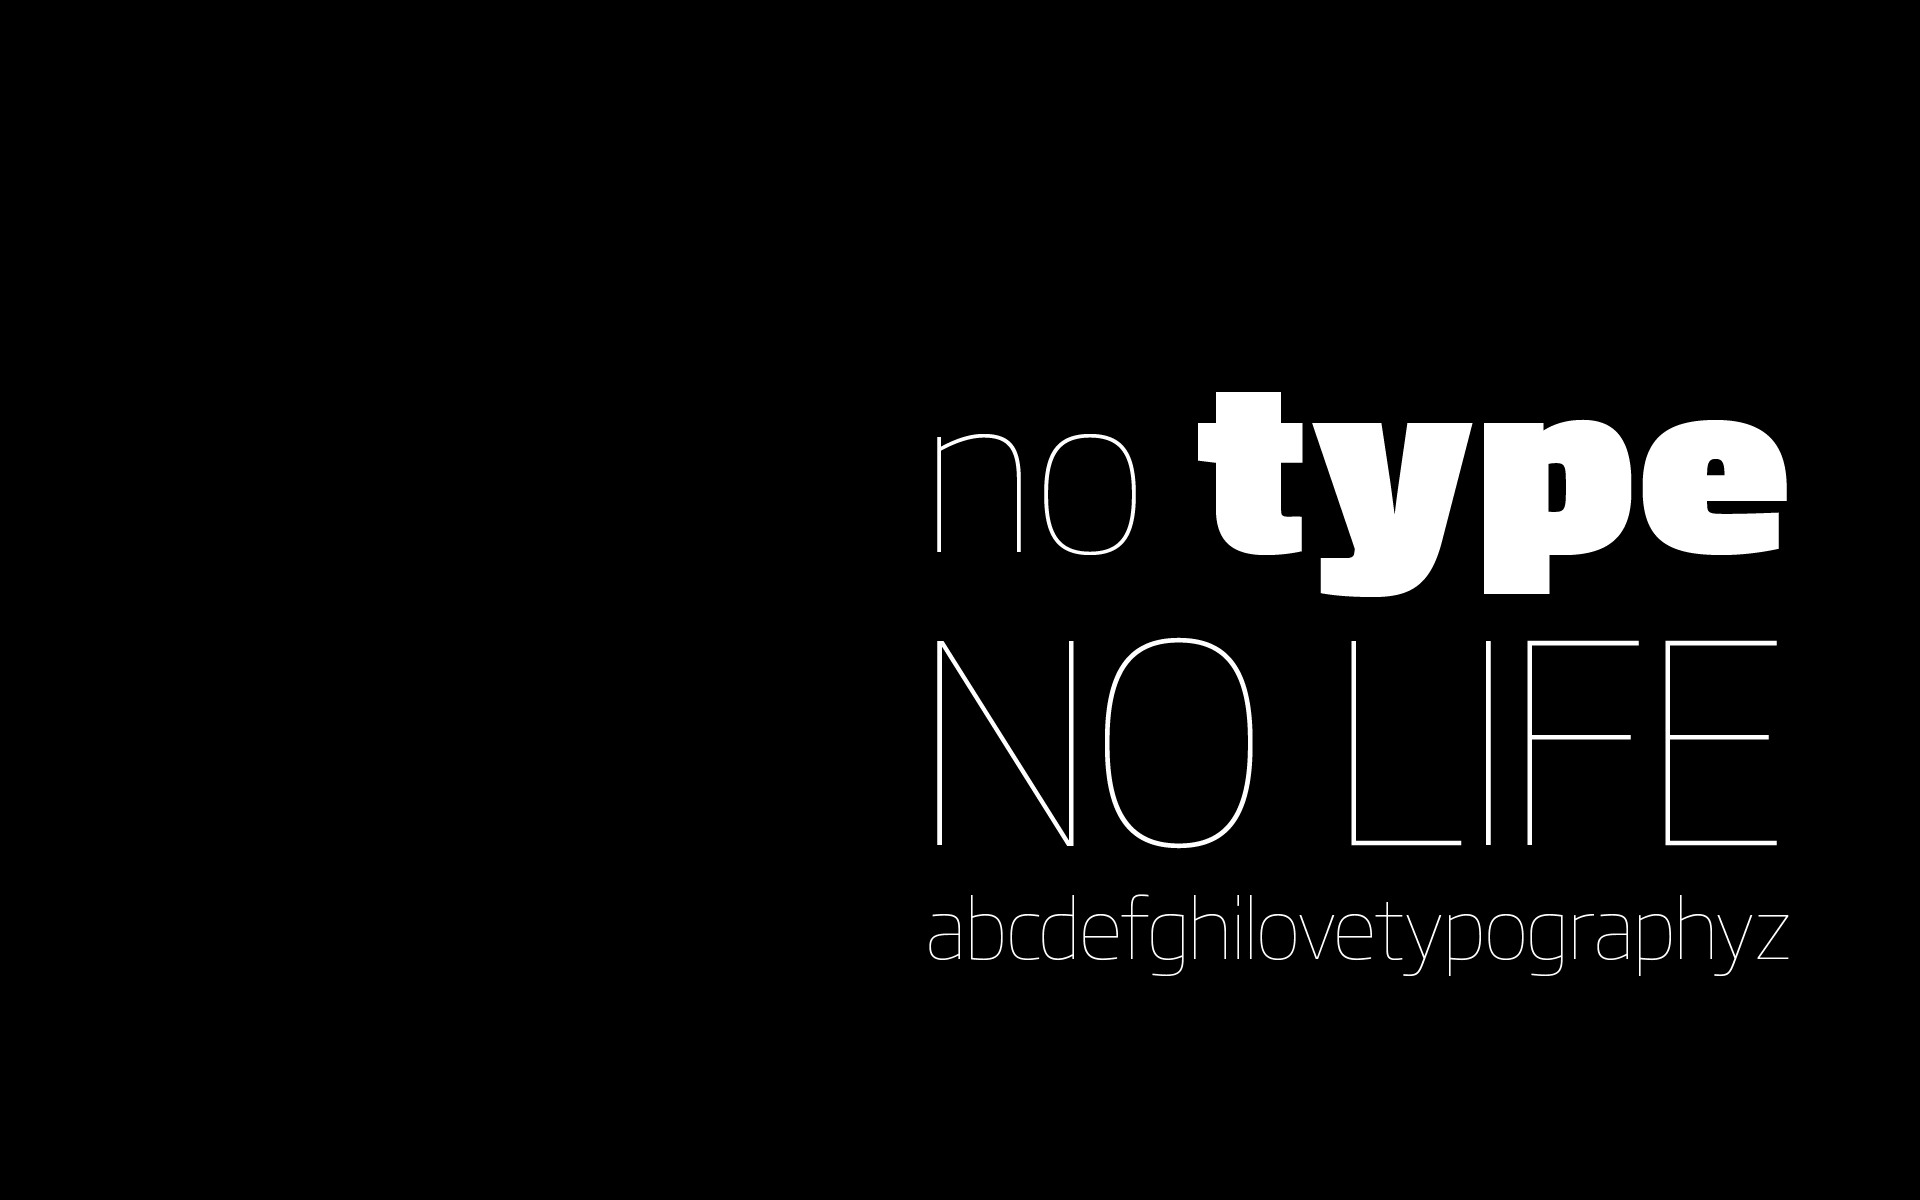     :: I love typography ::  1